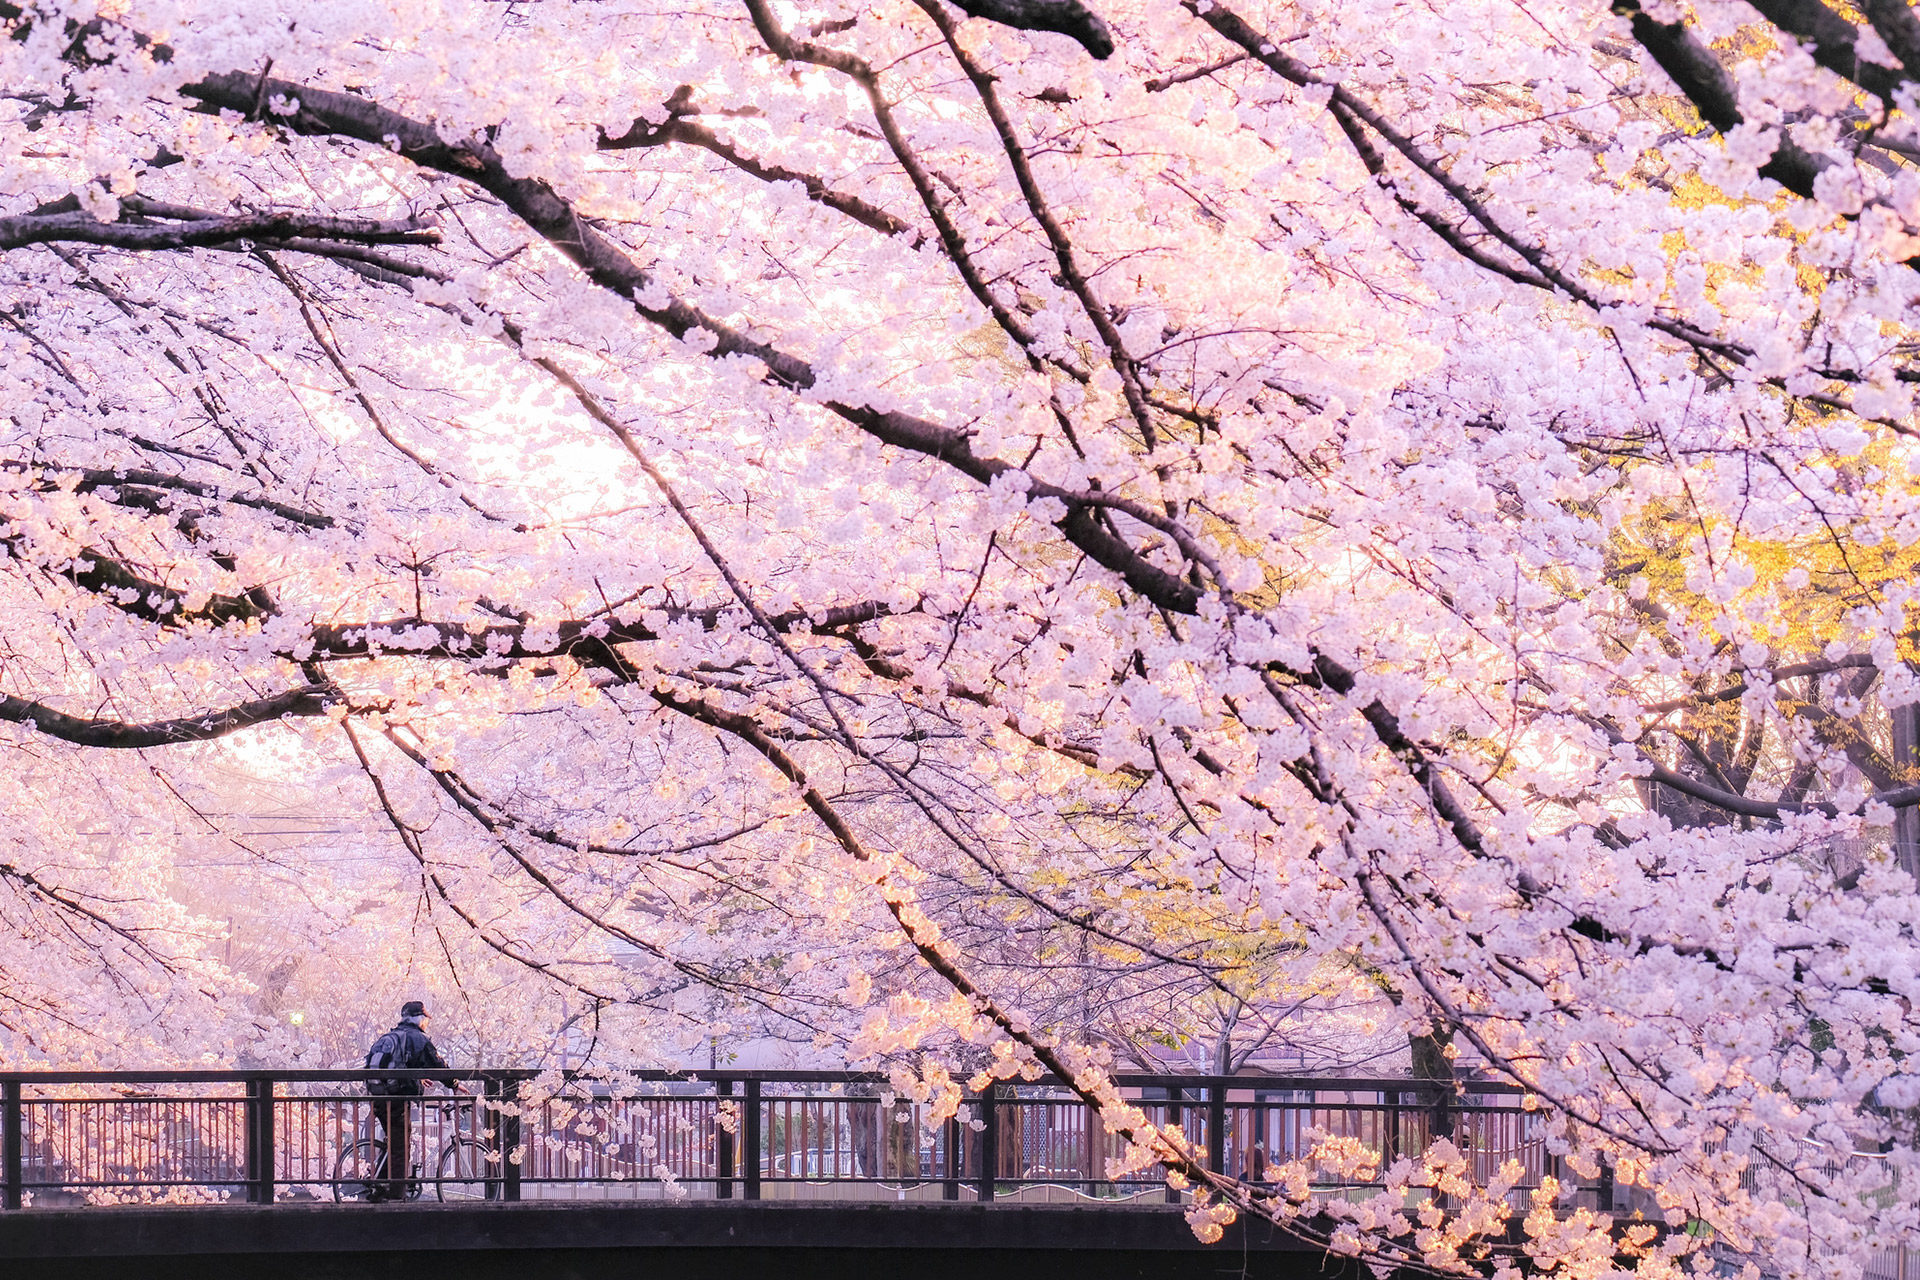 古老而美好的日本风景和樱花交织而成的绝景.京都的樱花名胜是